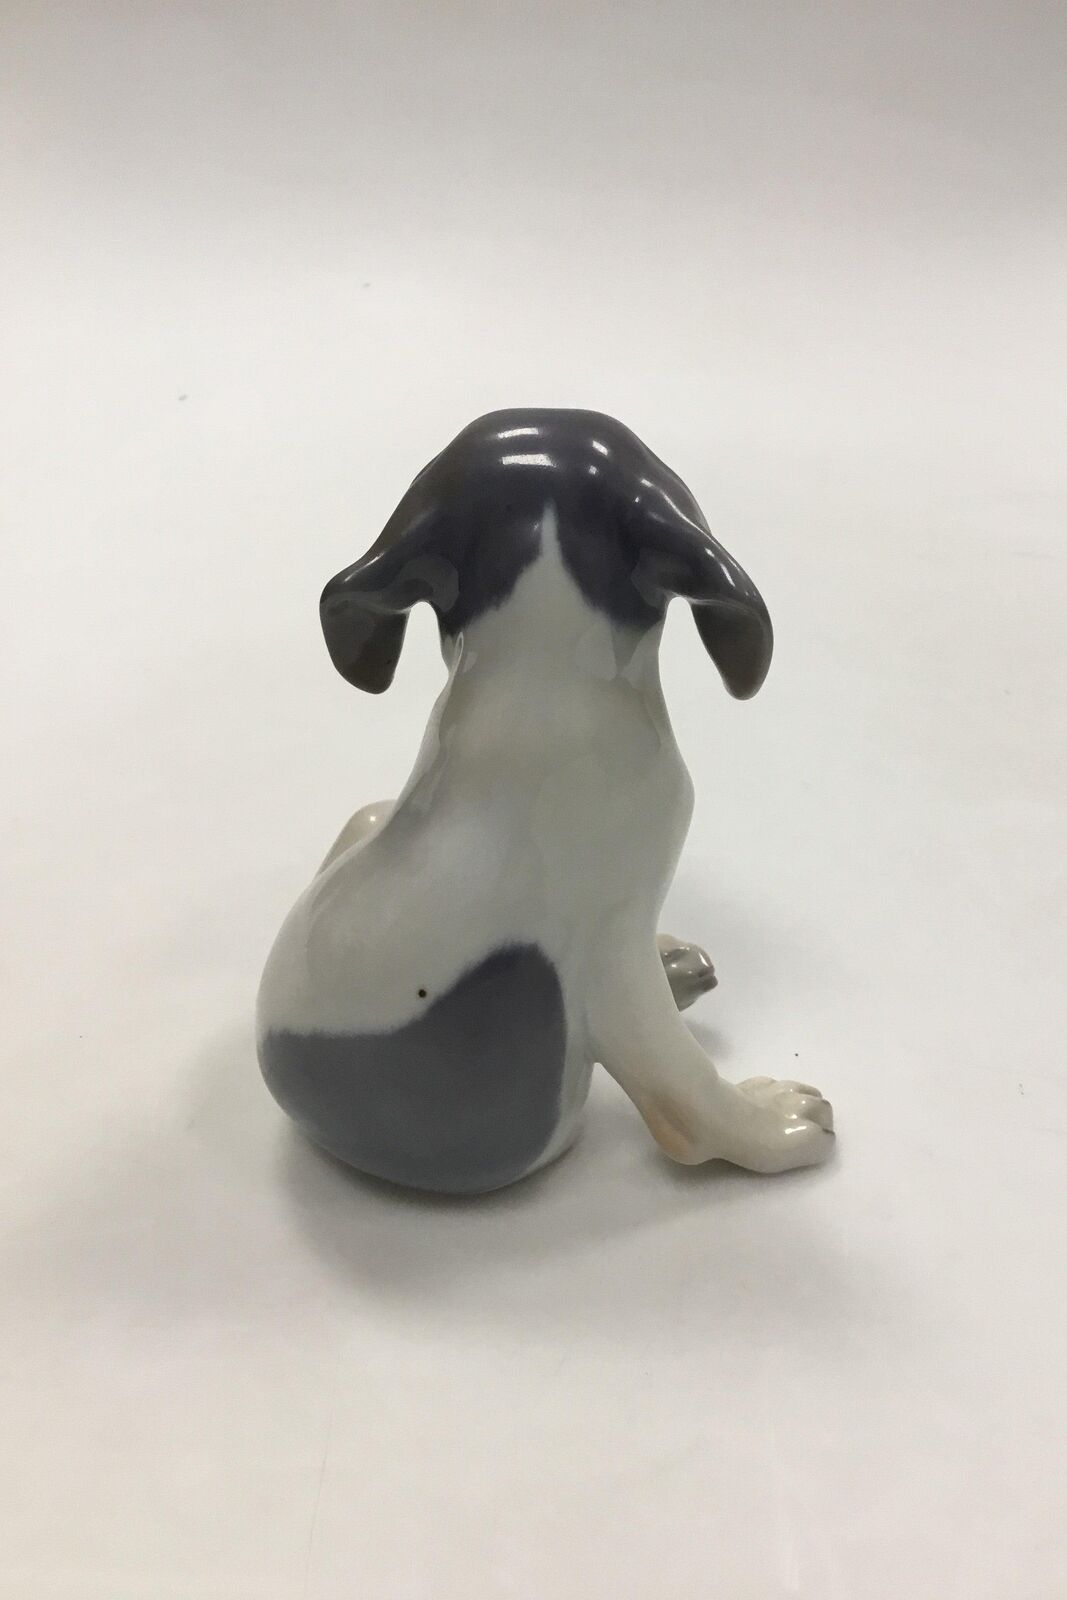 Royal Copenhagen Figurine Pointer Puppy No 206